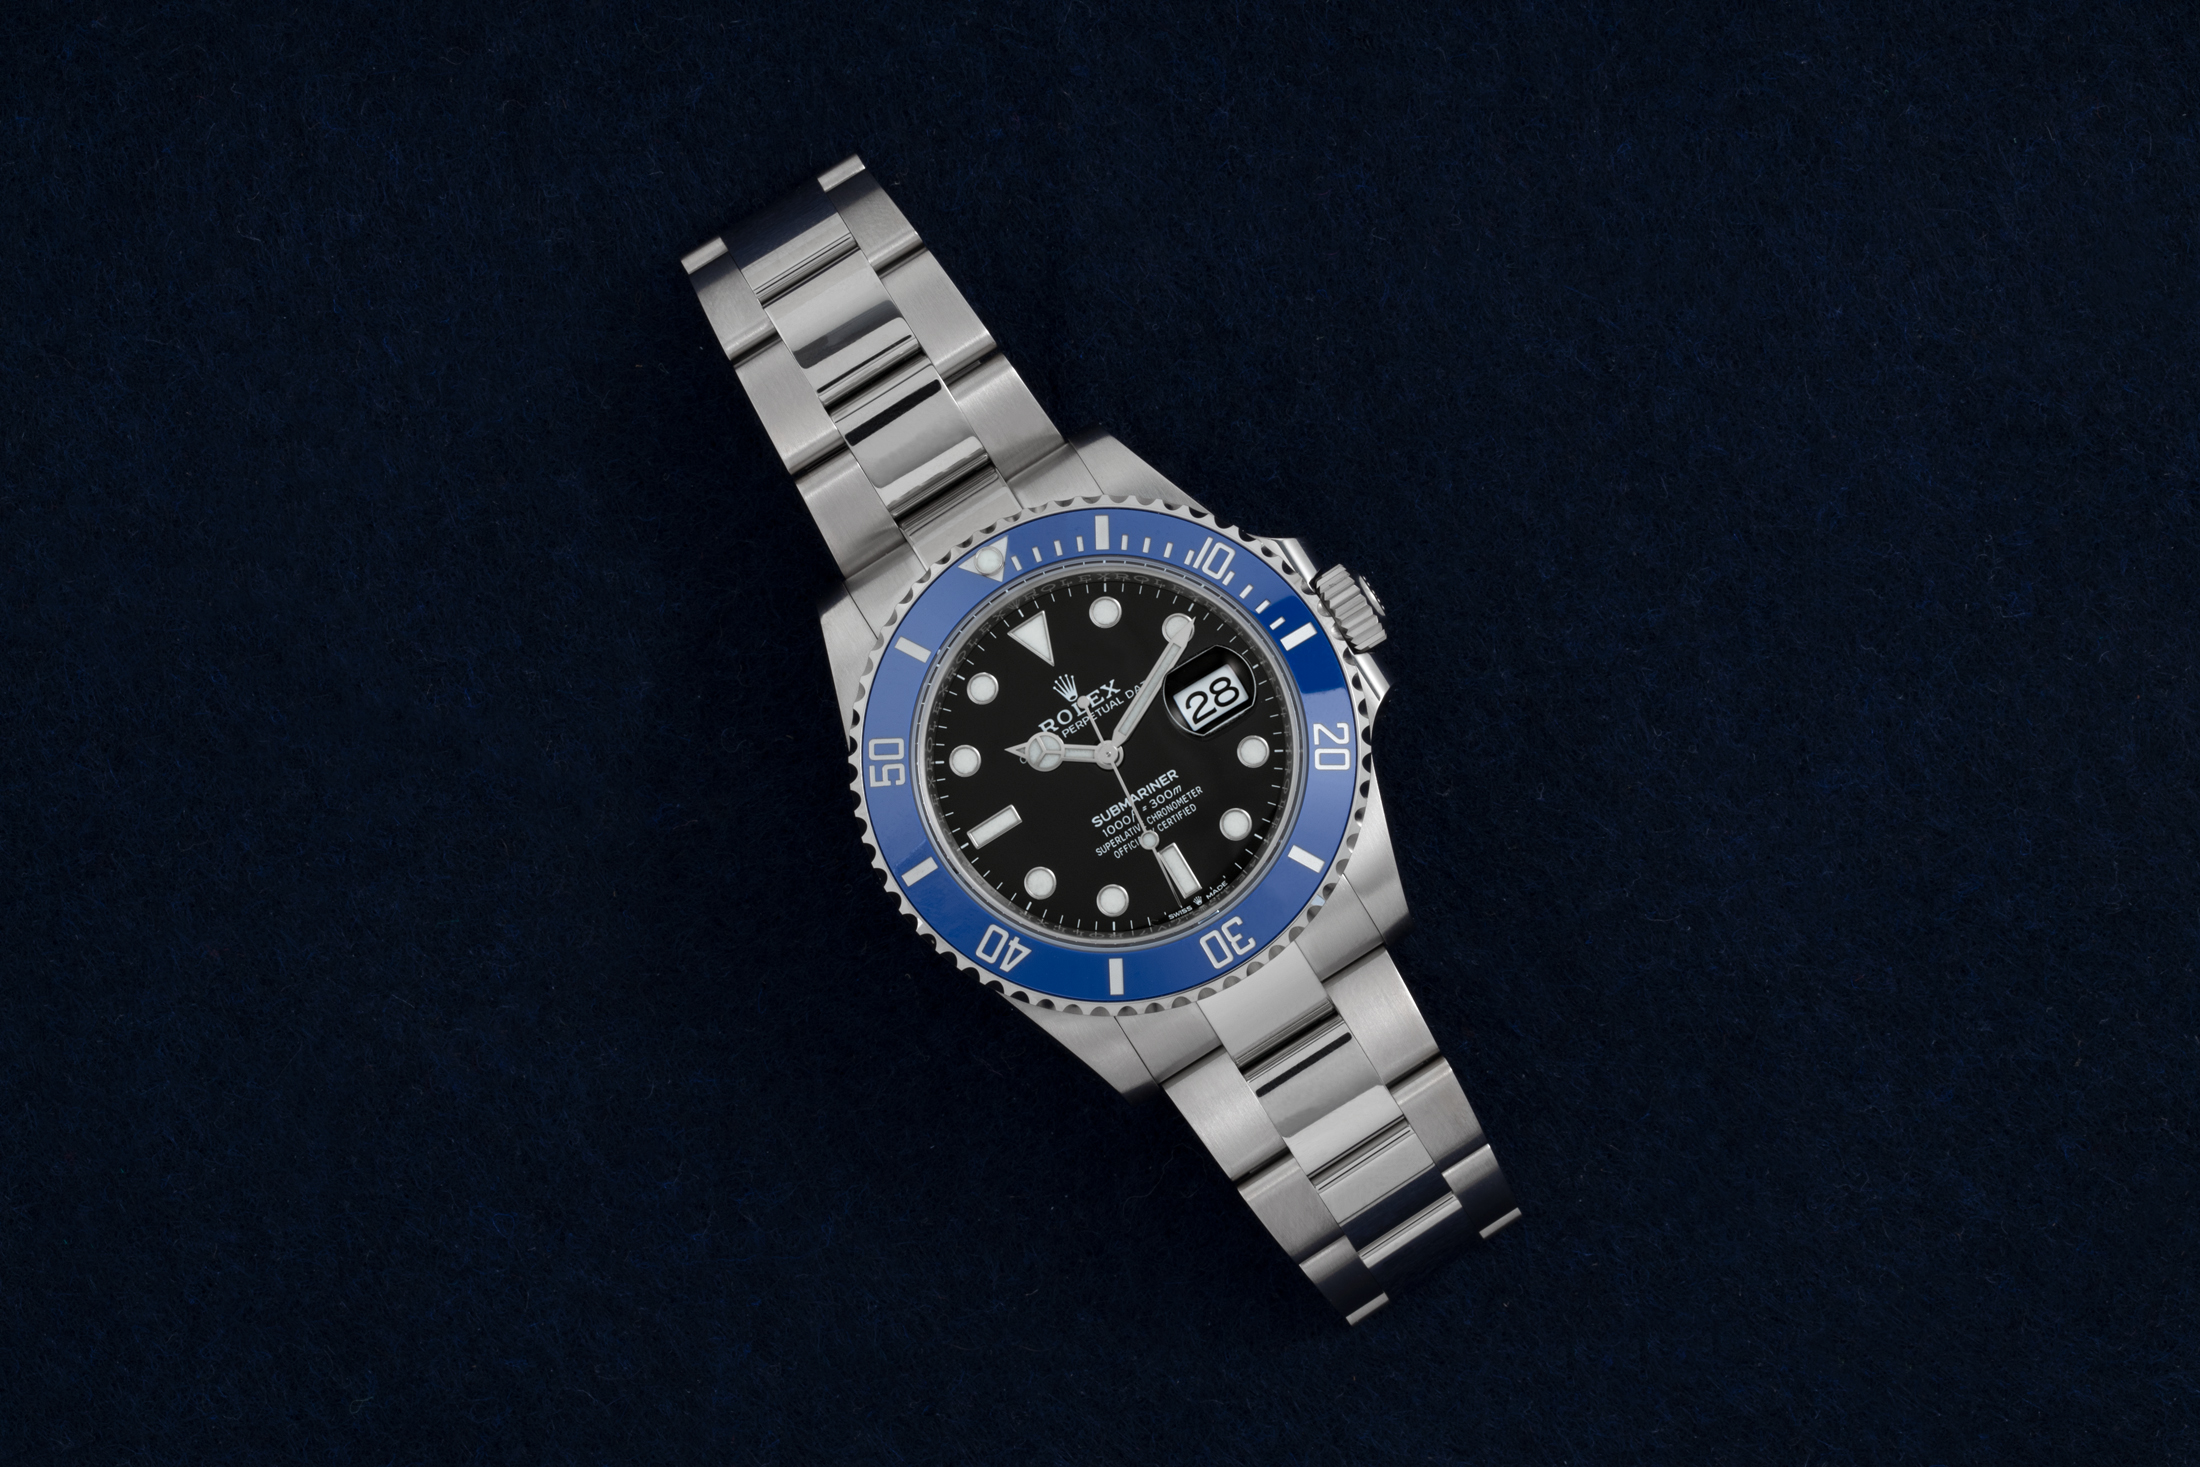 rolex submariner hodinkee